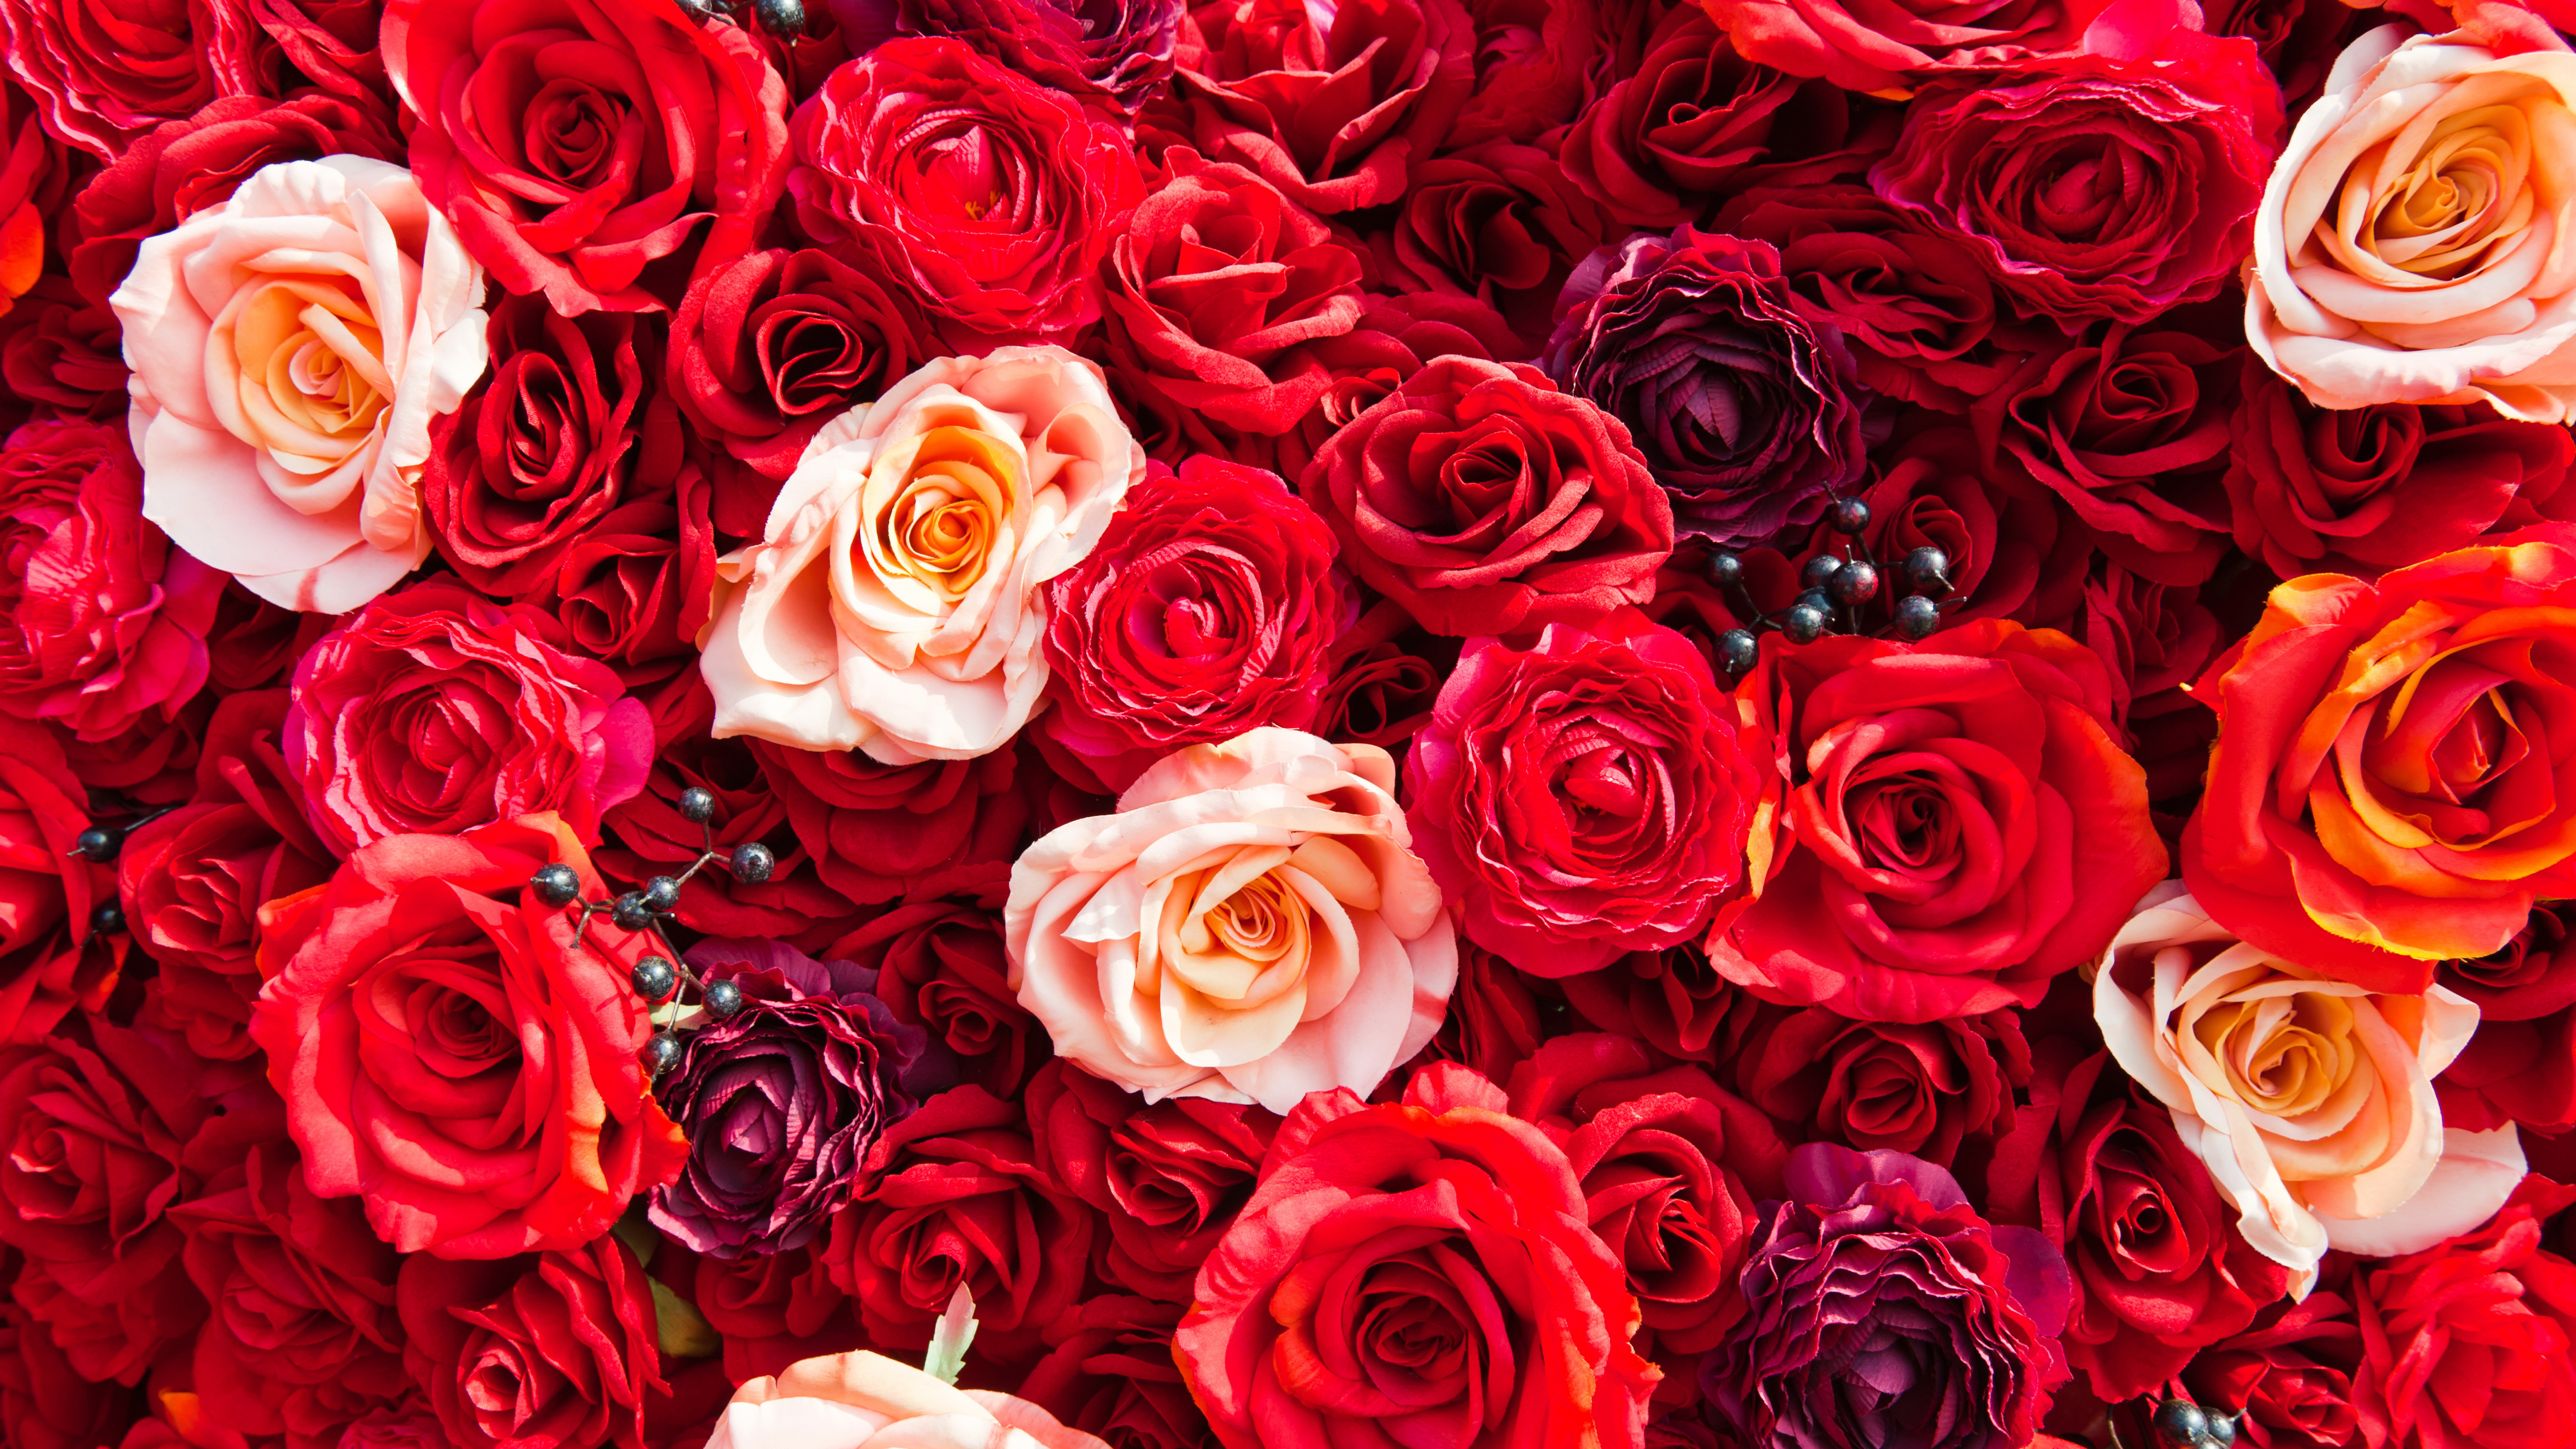 Обои сад роз, Роза, цветок, красный цвет, семья Роуз в разрешении 7680x4320